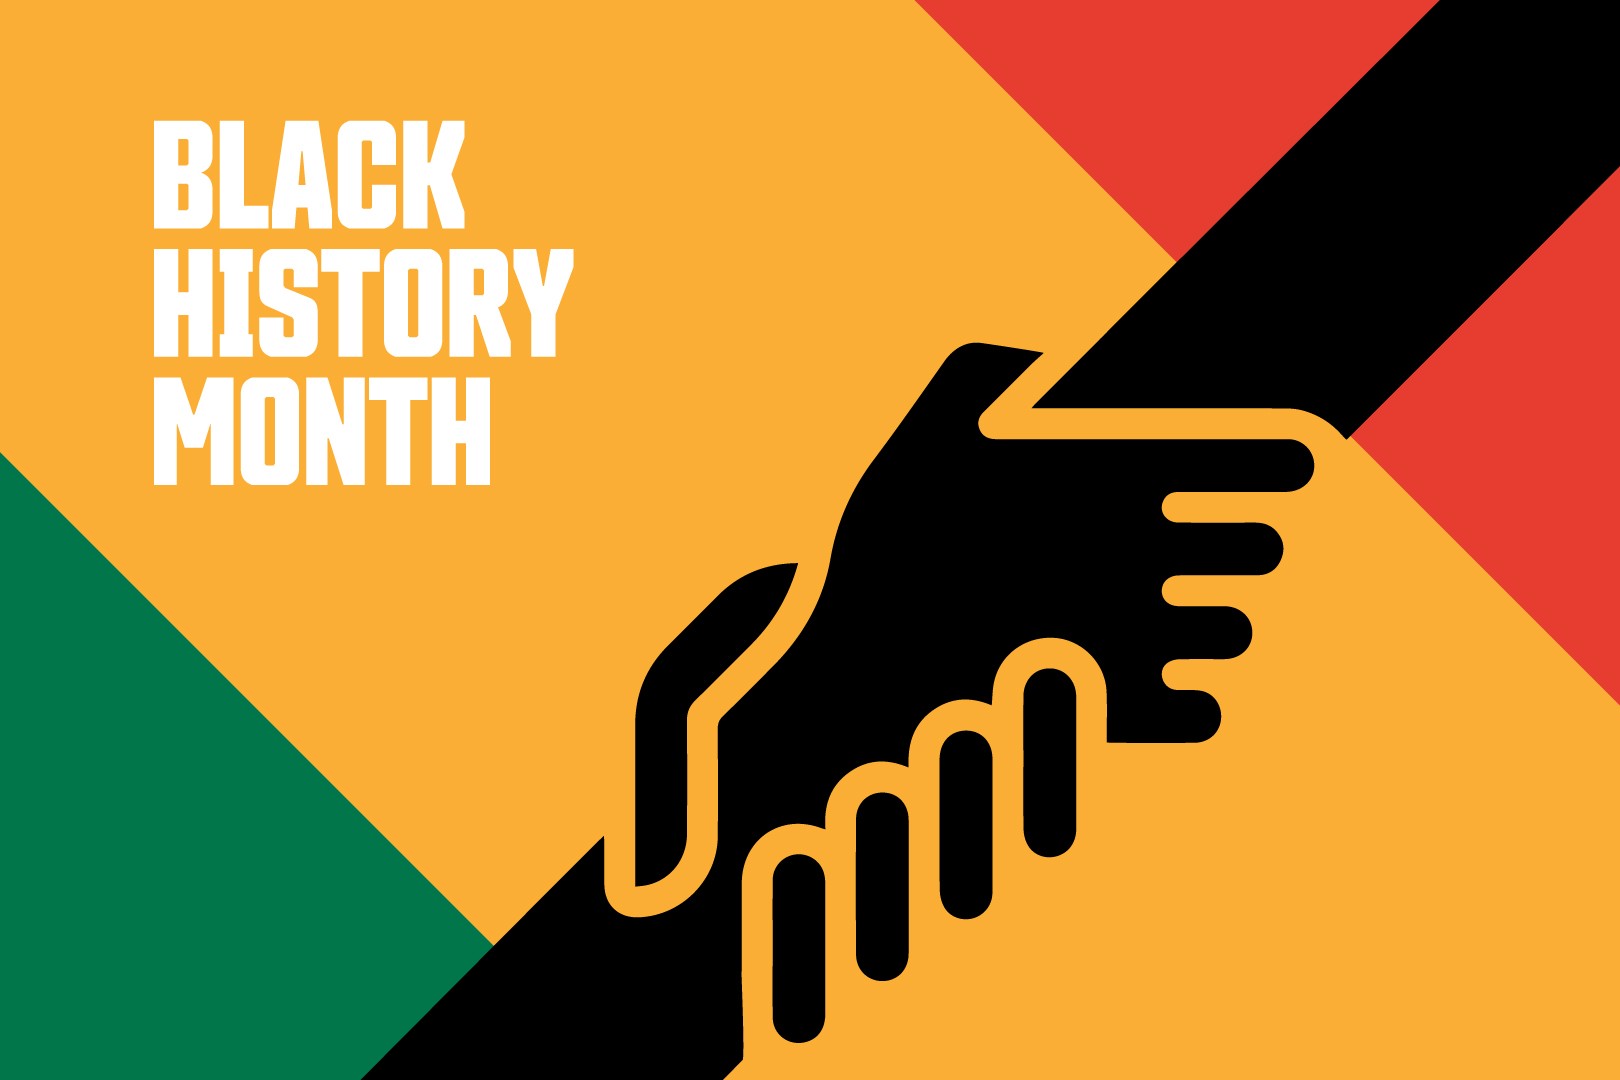 Lịch sử da đen (Black History Month): Hãy cùng khám phá lịch sử của người da đen và những đóng góp vĩ đại mà họ đã mang lại cho thế giới. Tìm hiểu về sự kiện và những nhân vật quan trọng trong lịch sử da đen thông qua hình ảnh đầy ngôn từ và cảm xúc đang chờ bạn khám phá.